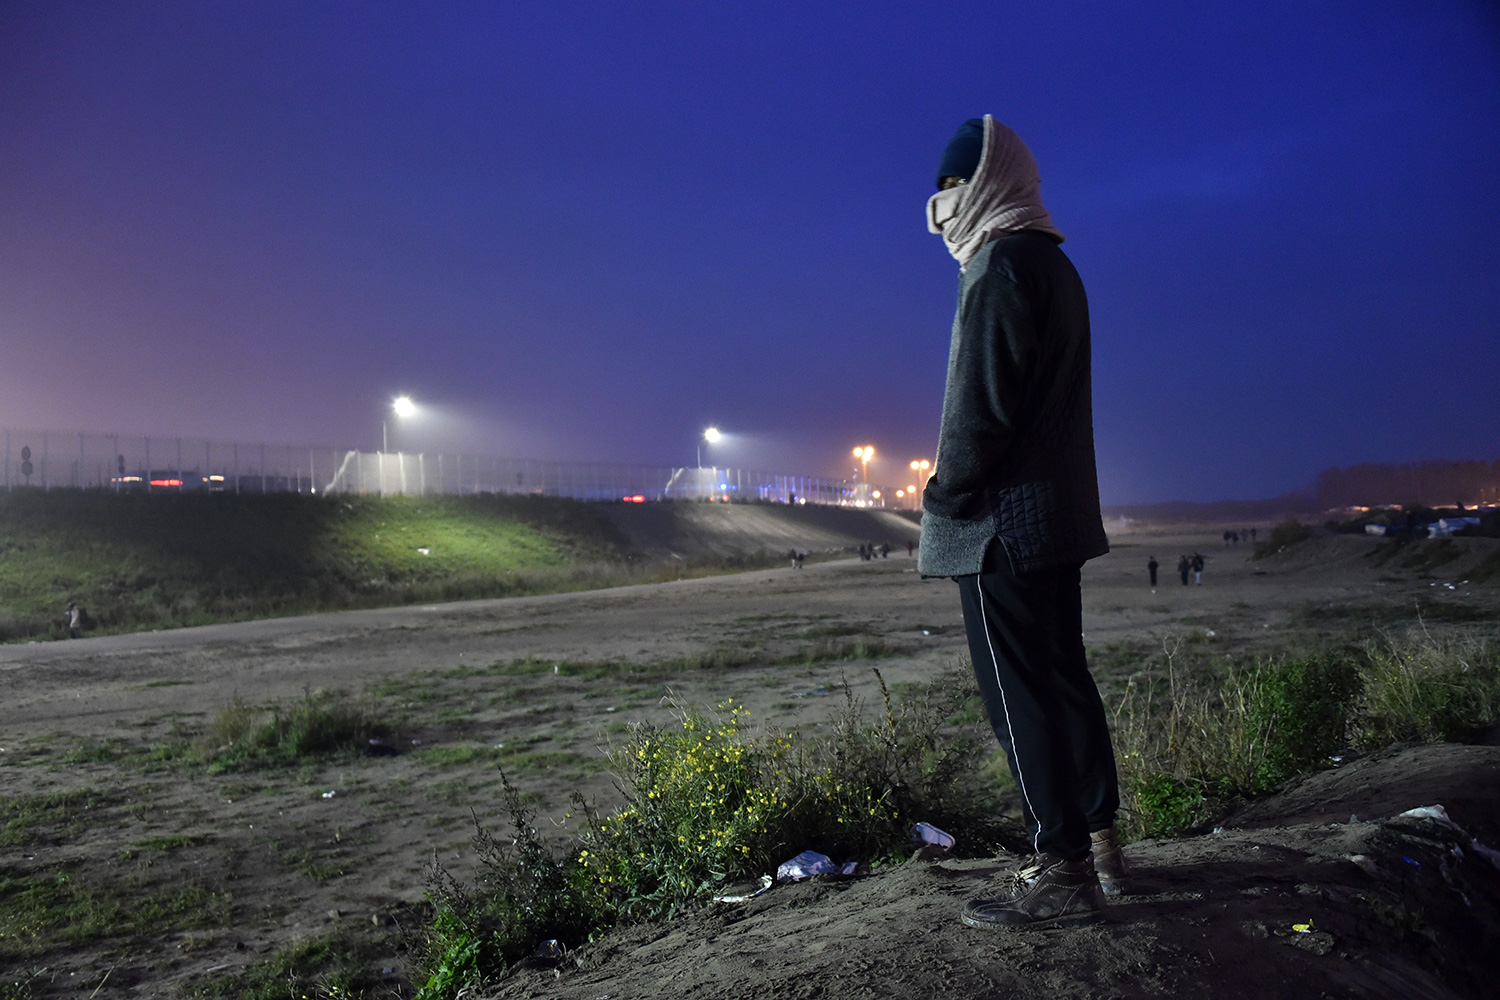 ¿Qué pasará ahora con los refugiados de Calais?